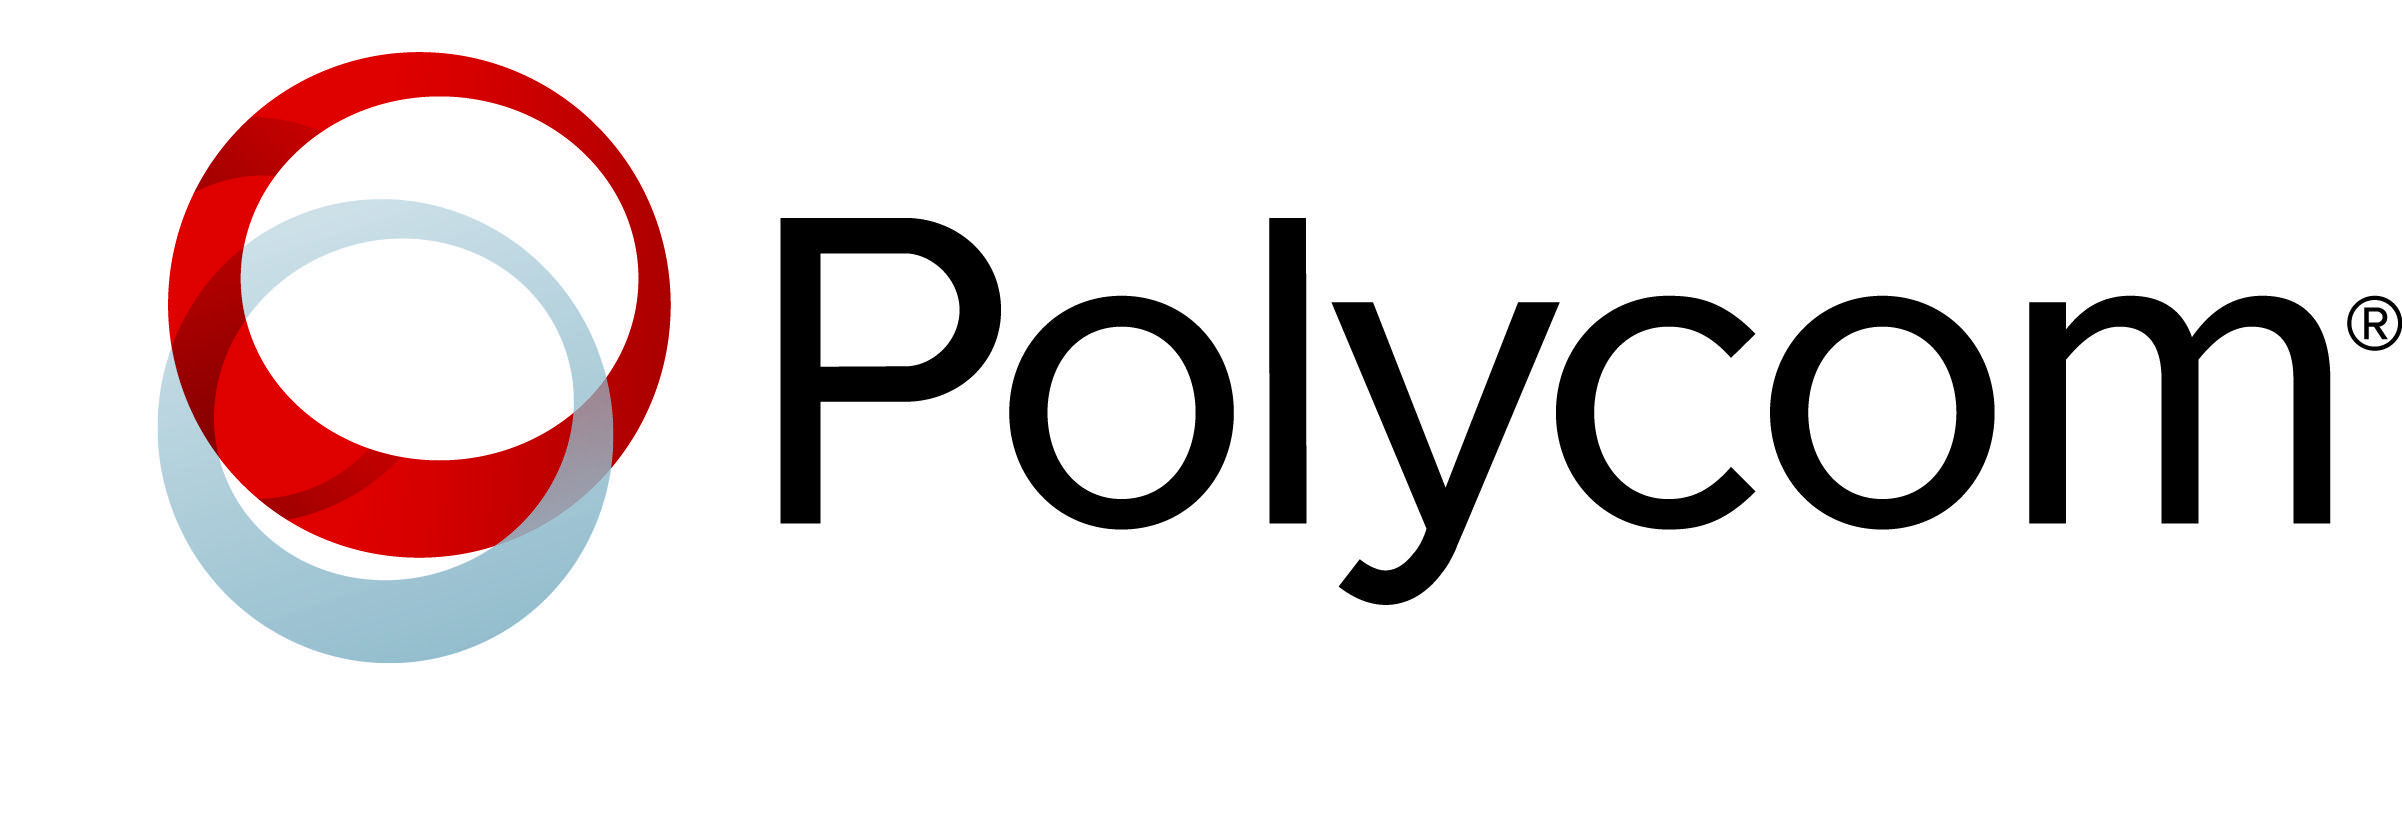 Polycom Logo - Polycom-Logo-Commercial-AV - Dunedin